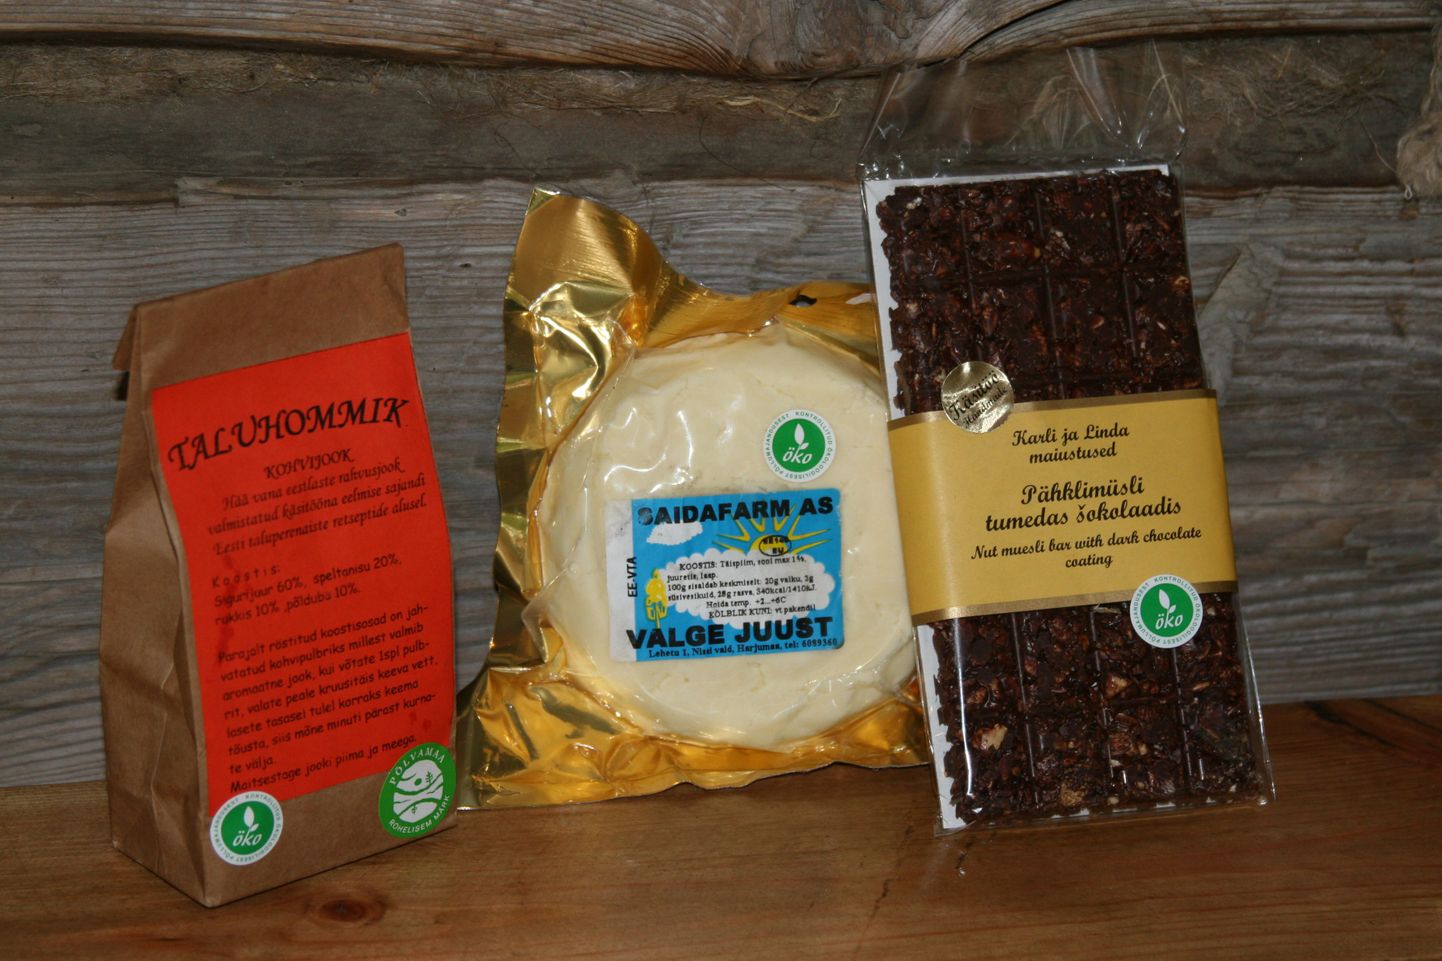 Eesti paremad mahetooted aastal 2010: kohvijook Taluhommik, Pähklimüsli tumedas šokolaadis ja Saida valge juust.